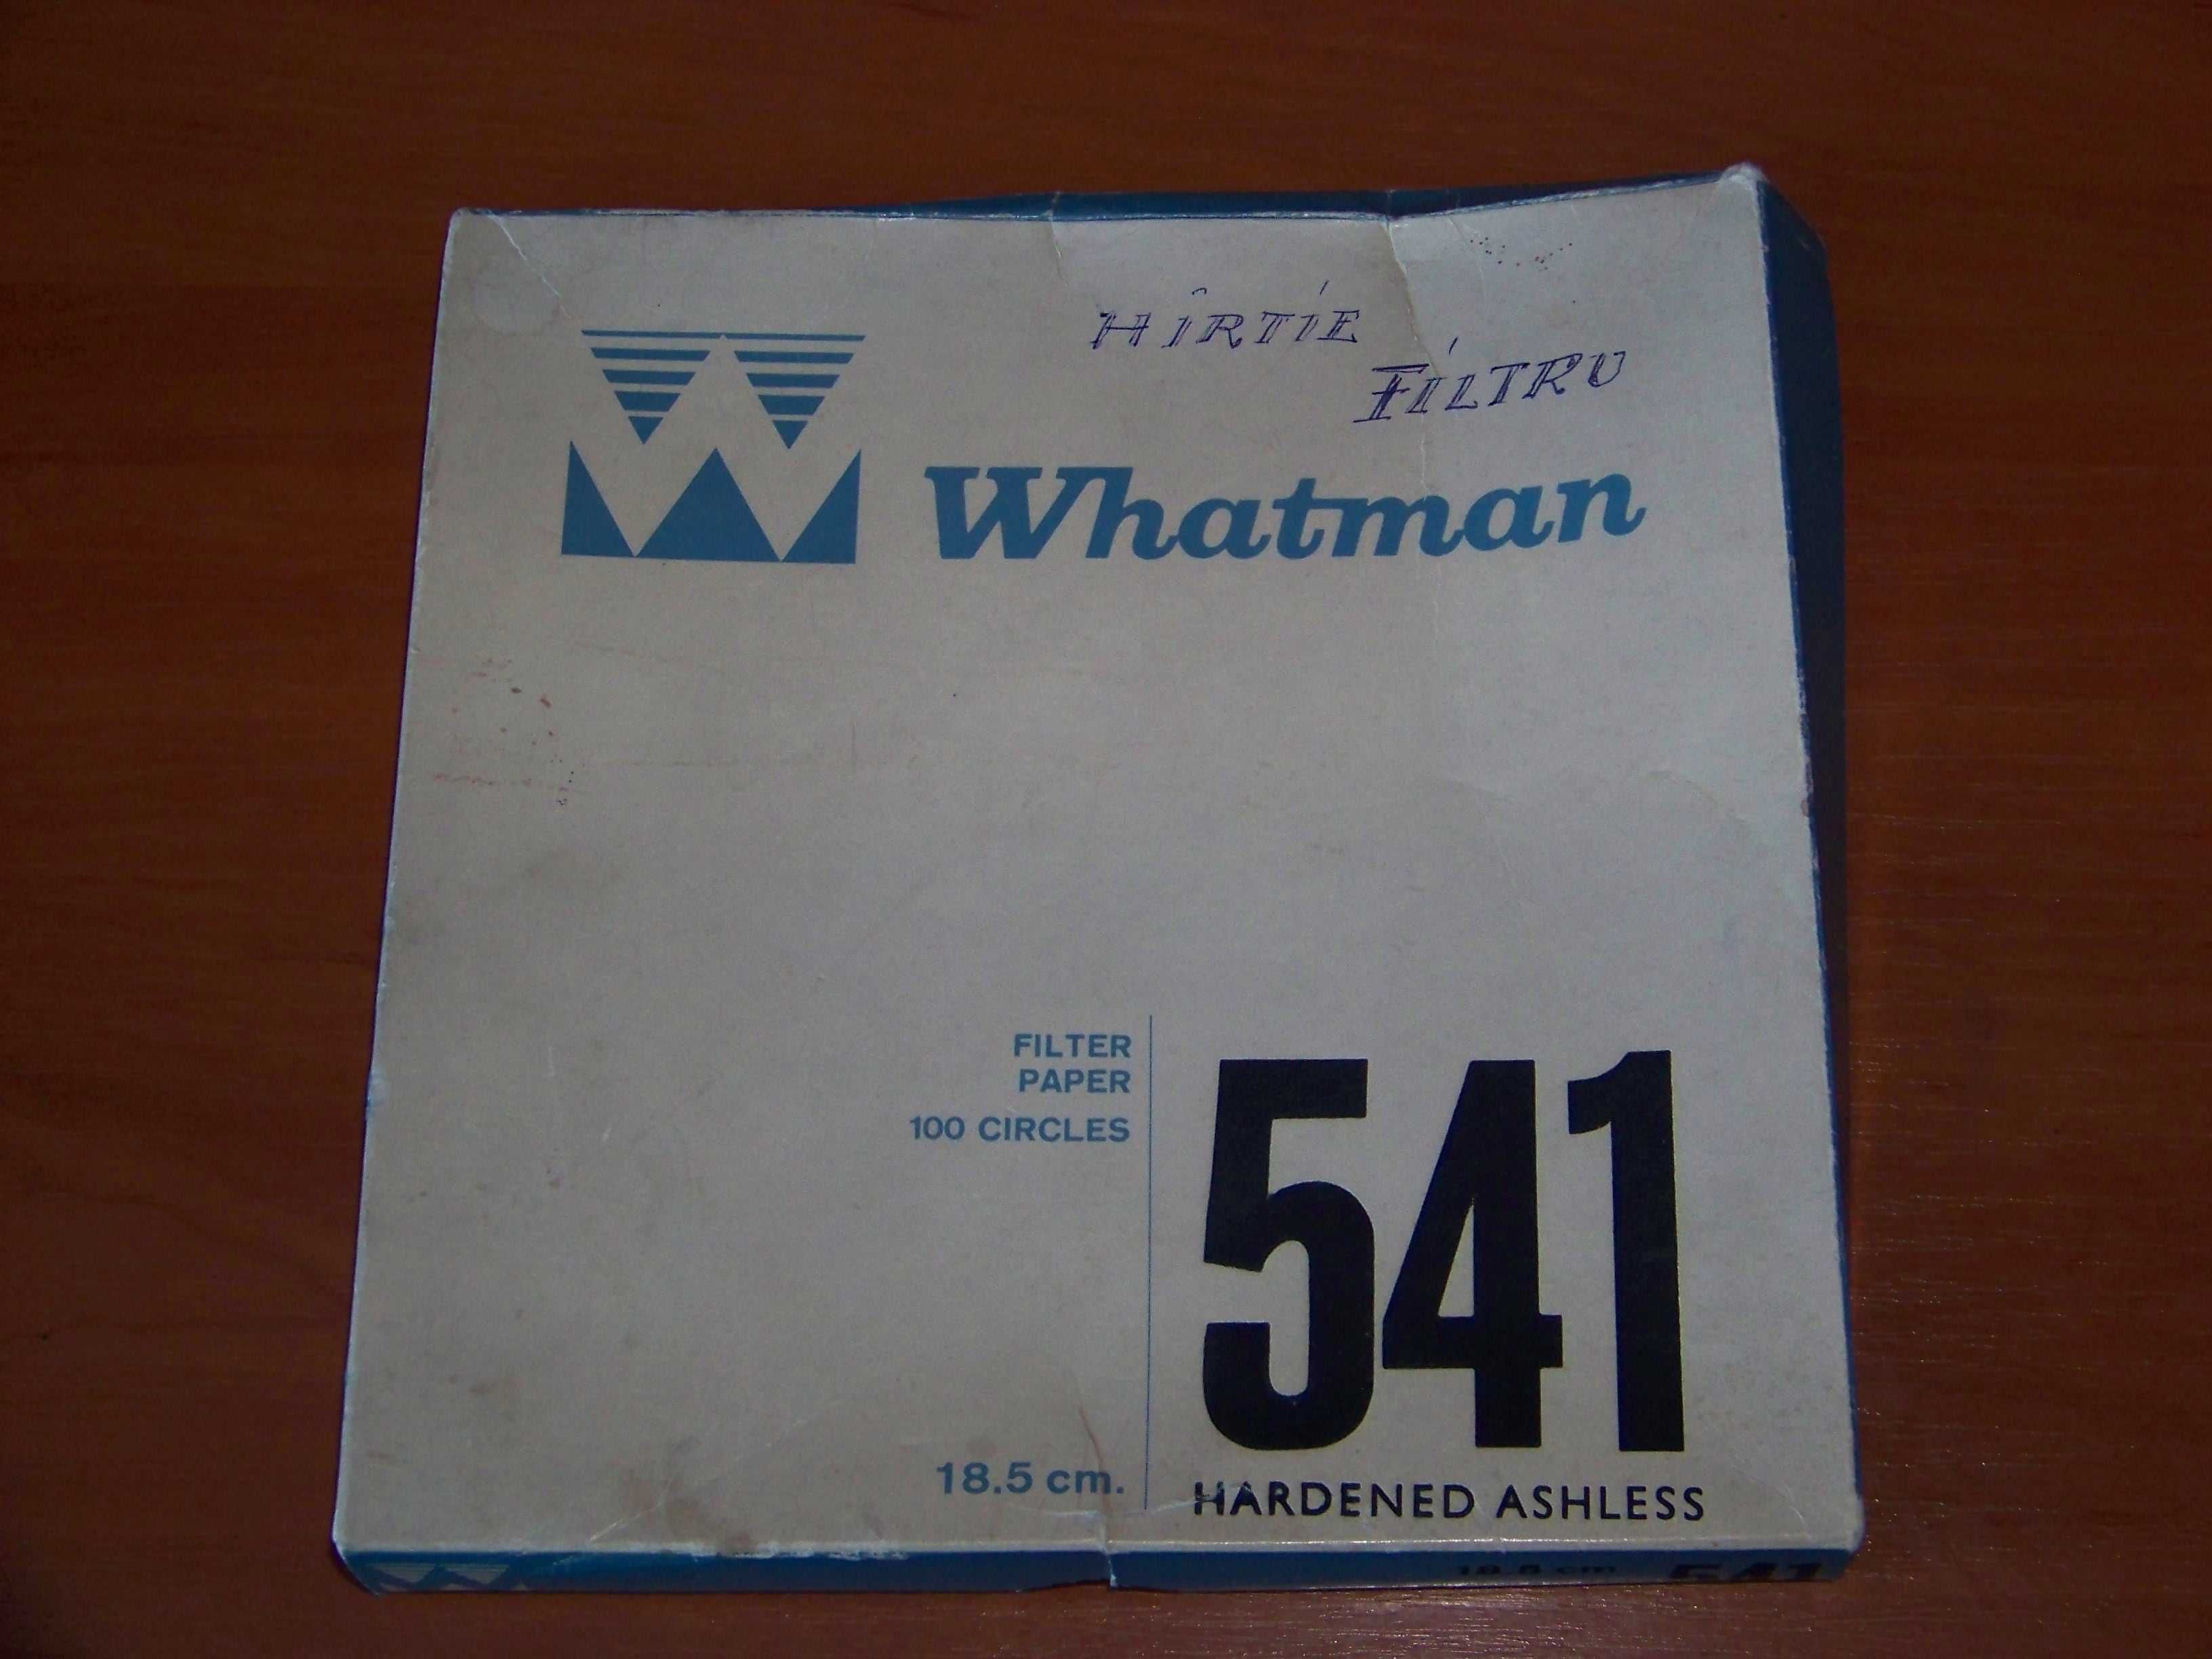 Filtre Whatman 541